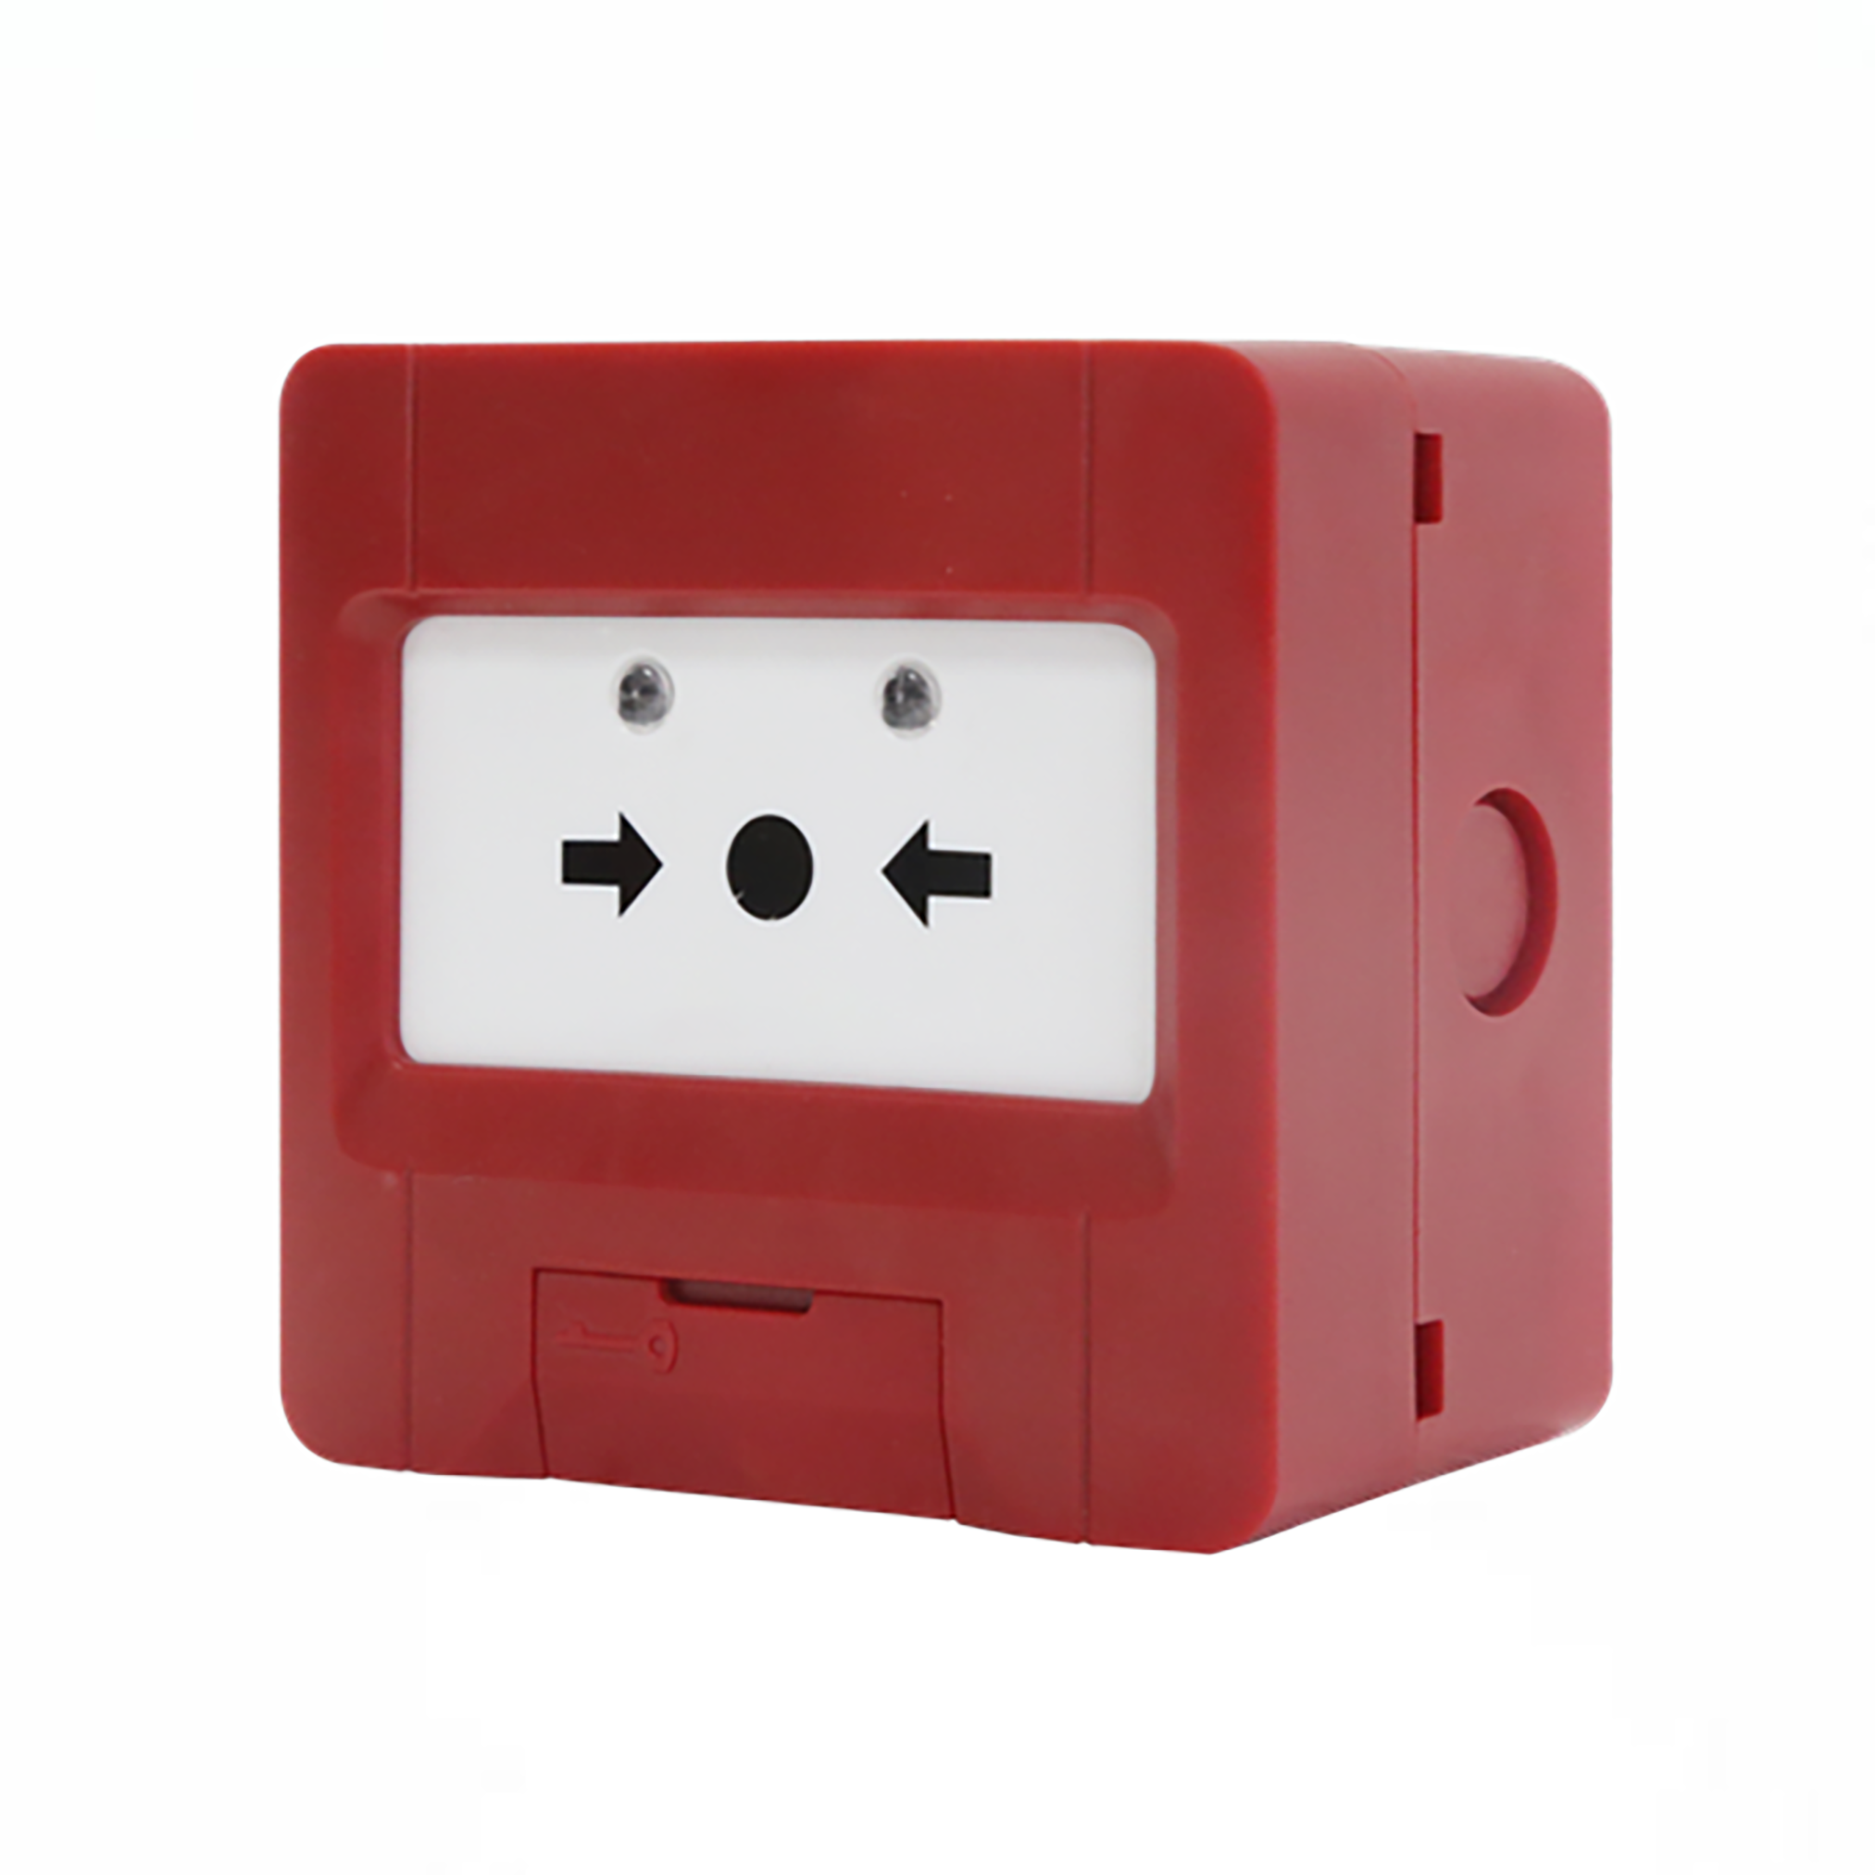 JBF4123A Qasje e shpejtë emergjente: Butoni Fire Hydrant mundëson aktivizimin e përshtatshëm dhe të menjëhershëm të hidrantëve të zjarrit